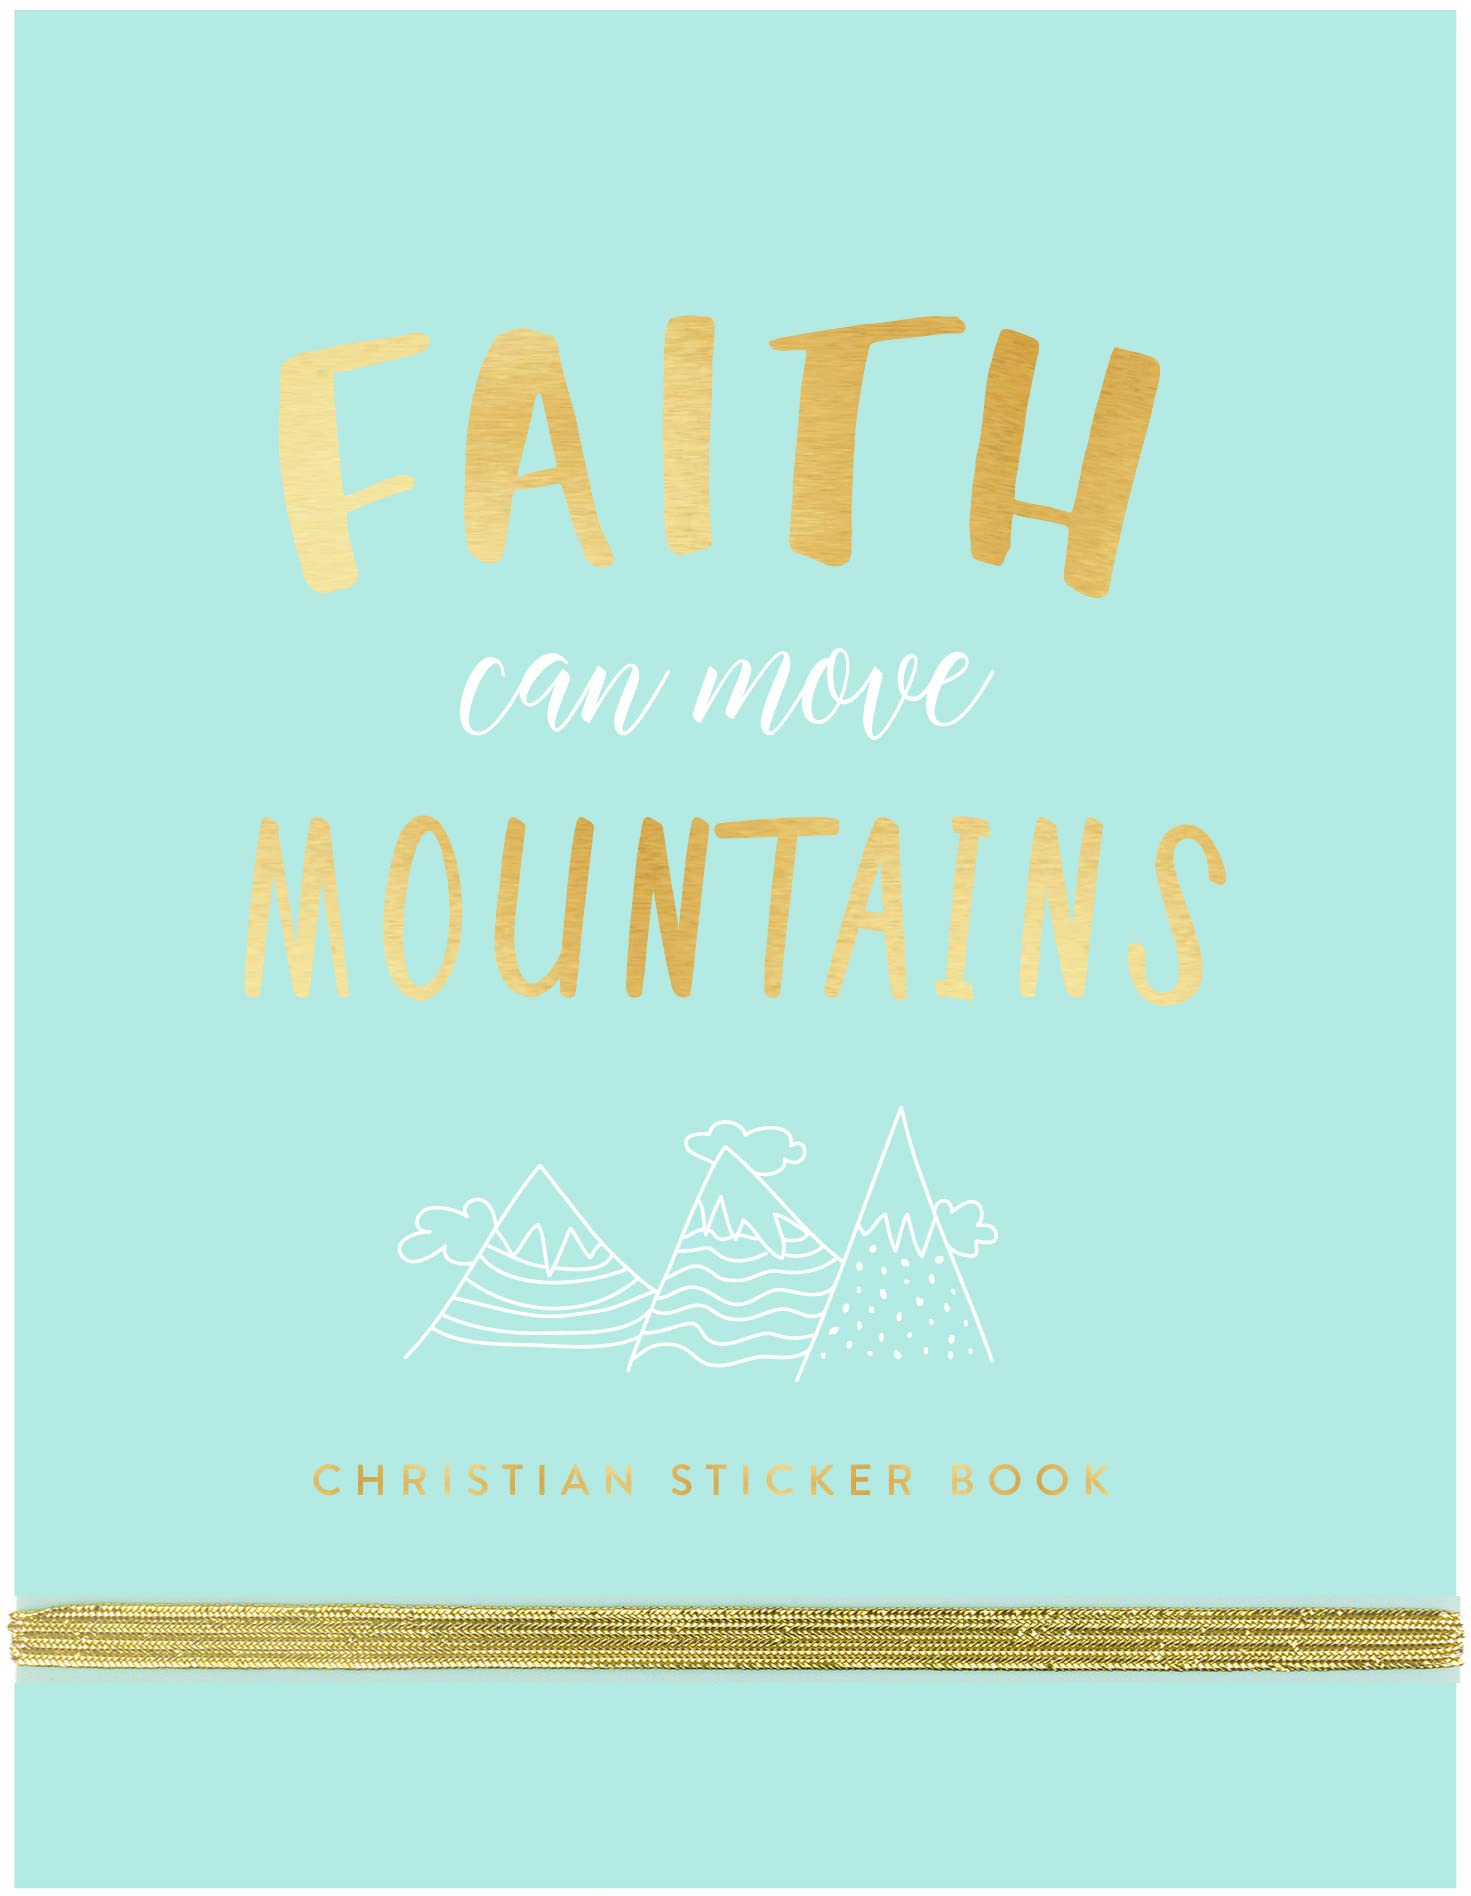 Eccolo Faith Sticker Book Cover